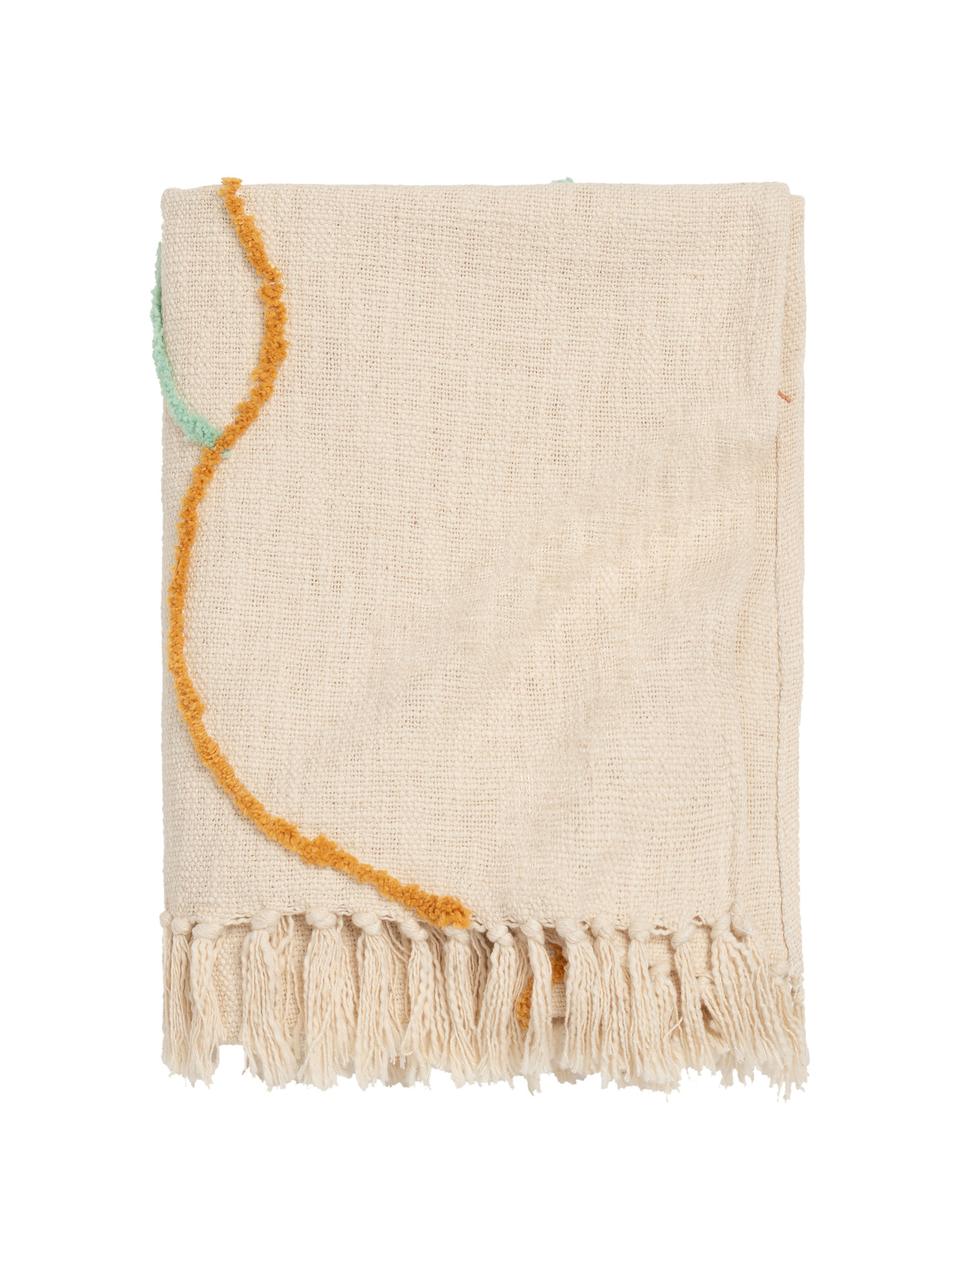 Pled z bawełny z frędzlami Malva, 100% bawełna, Odcienie kremowego, wielobarwny, S 120 x D 180 cm